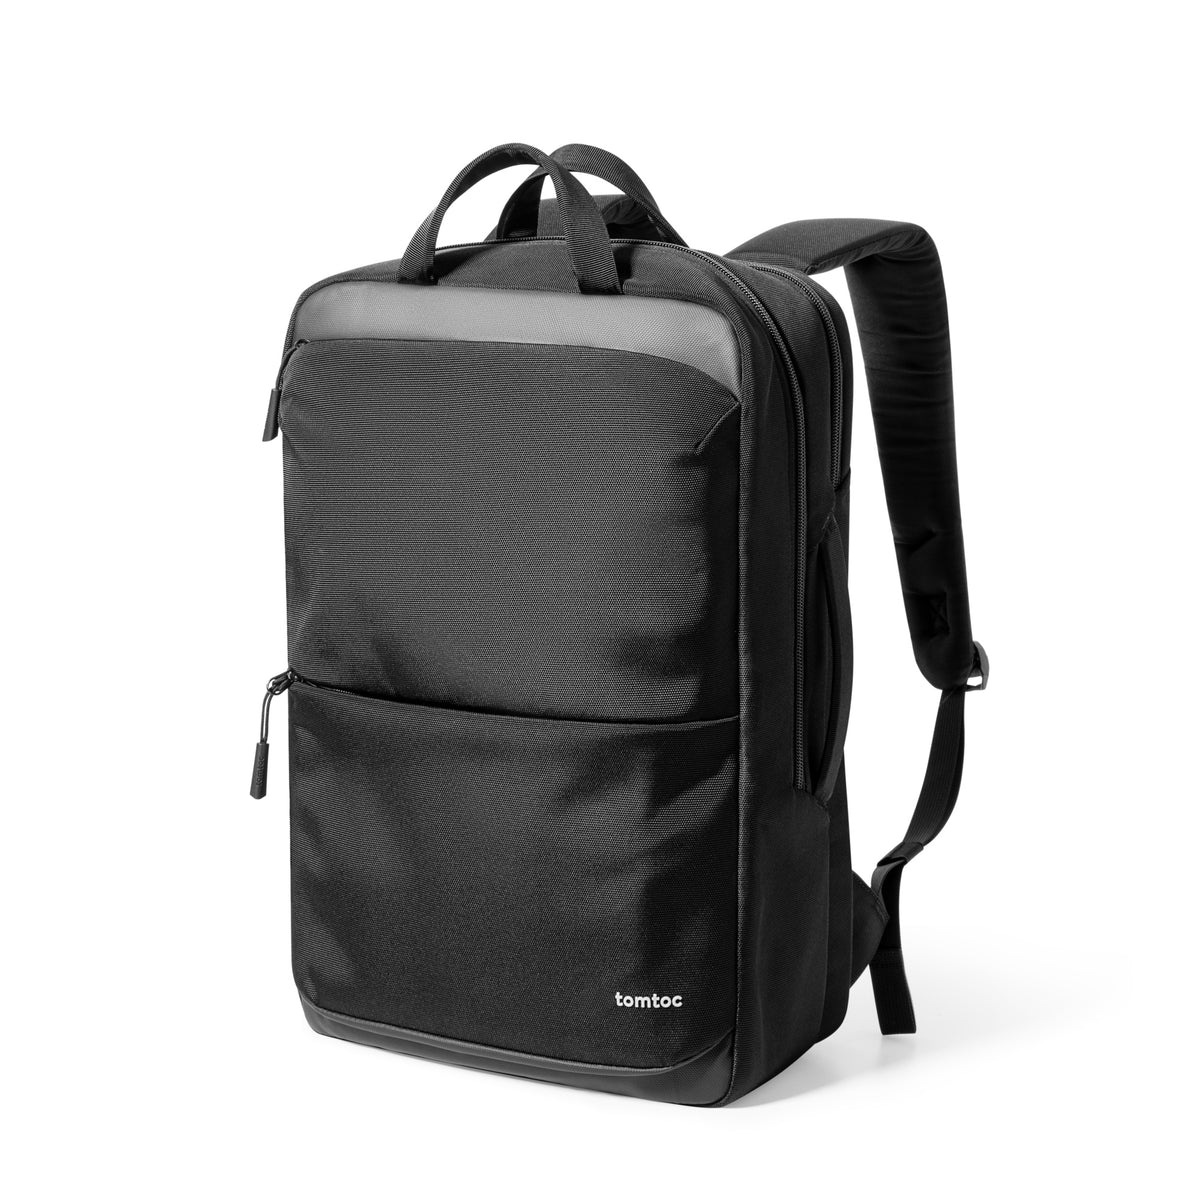 Navigator-T71 Laptop Backpack 18L/22L